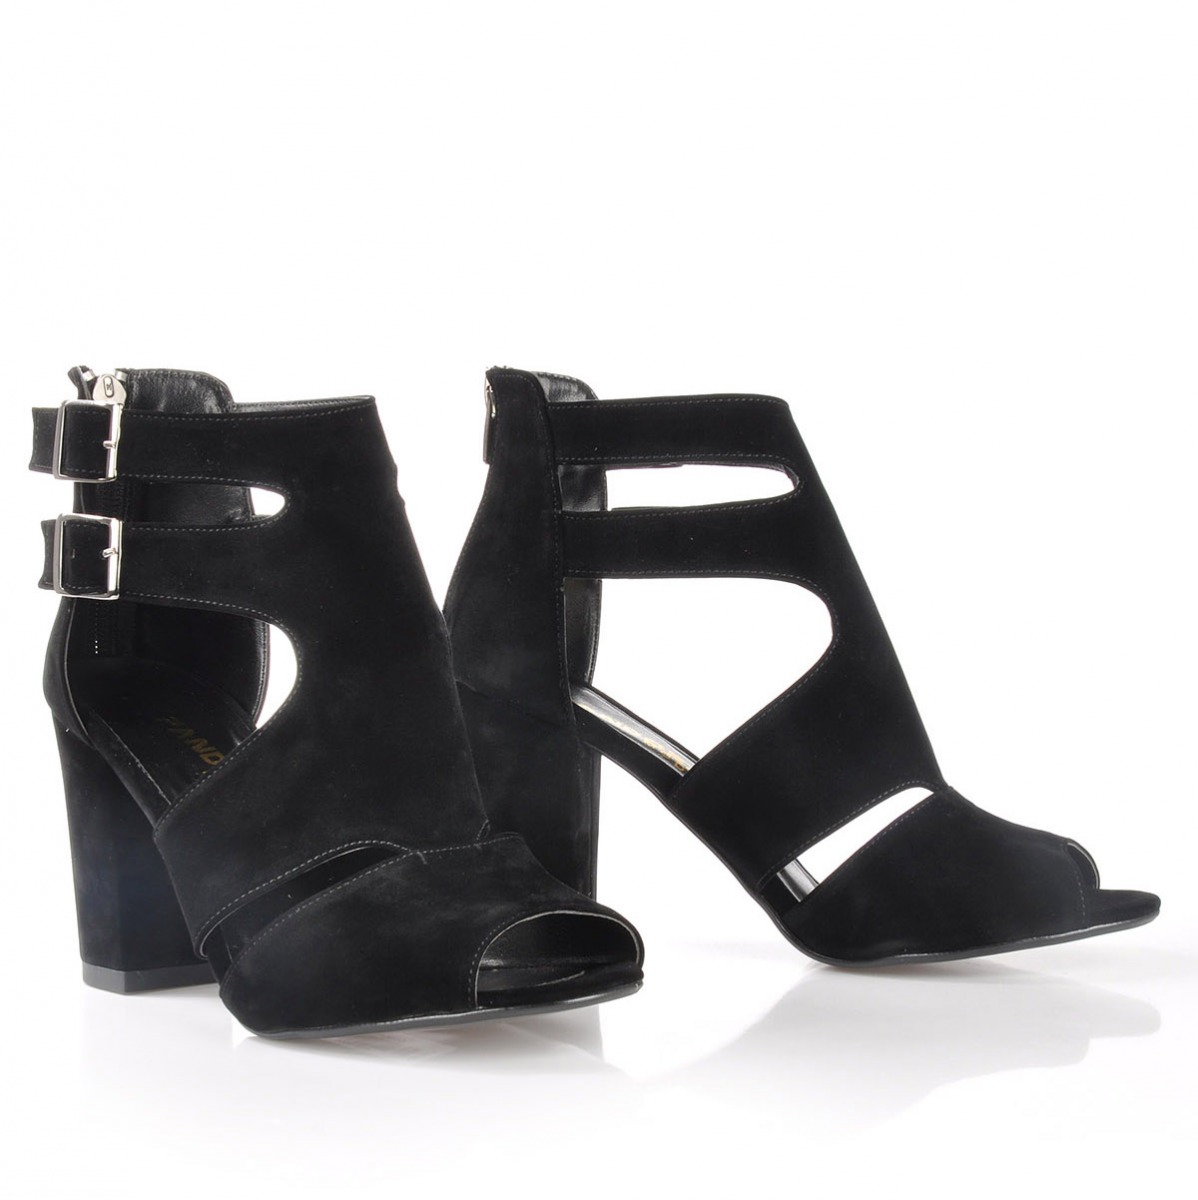 Flo Kadın  Siyah-Süet Klasik Topuklu Ayakkabı VZN-161Y. 4